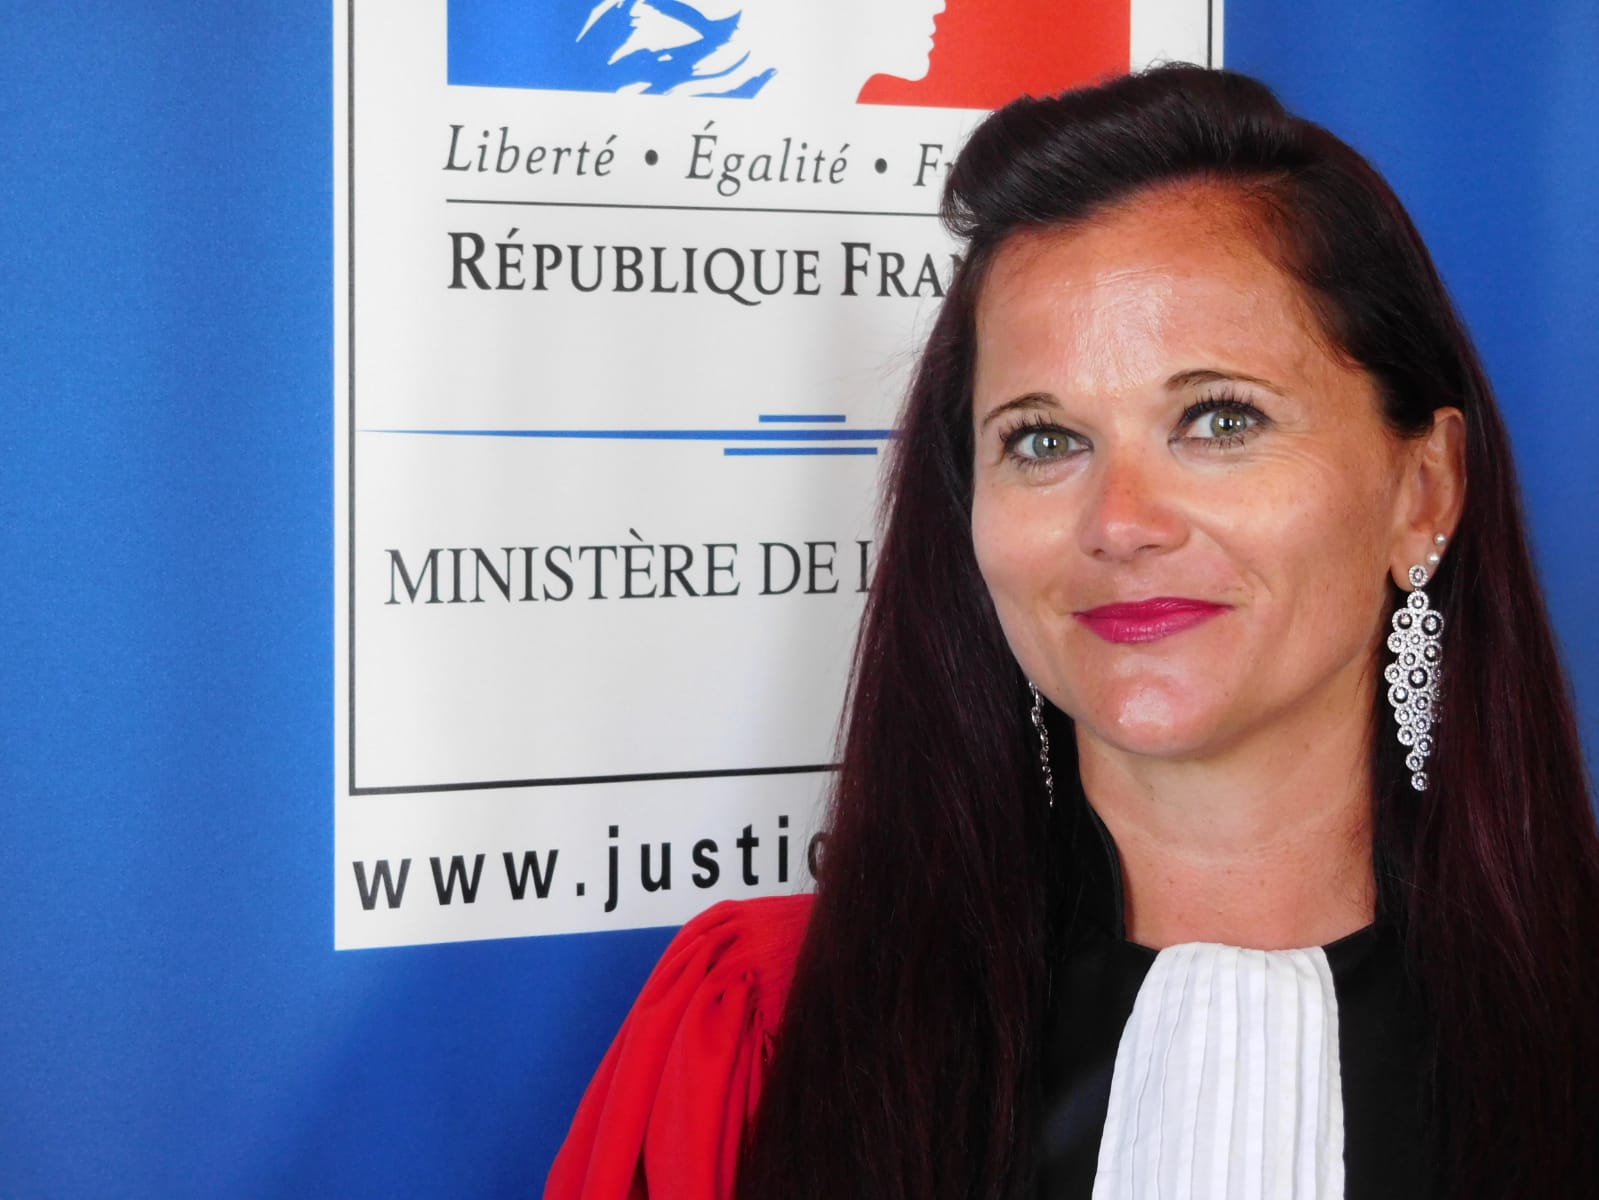     Élodie Rouchouse, nouvel avocat général à la Cour d'Appel de Basse-Terre

